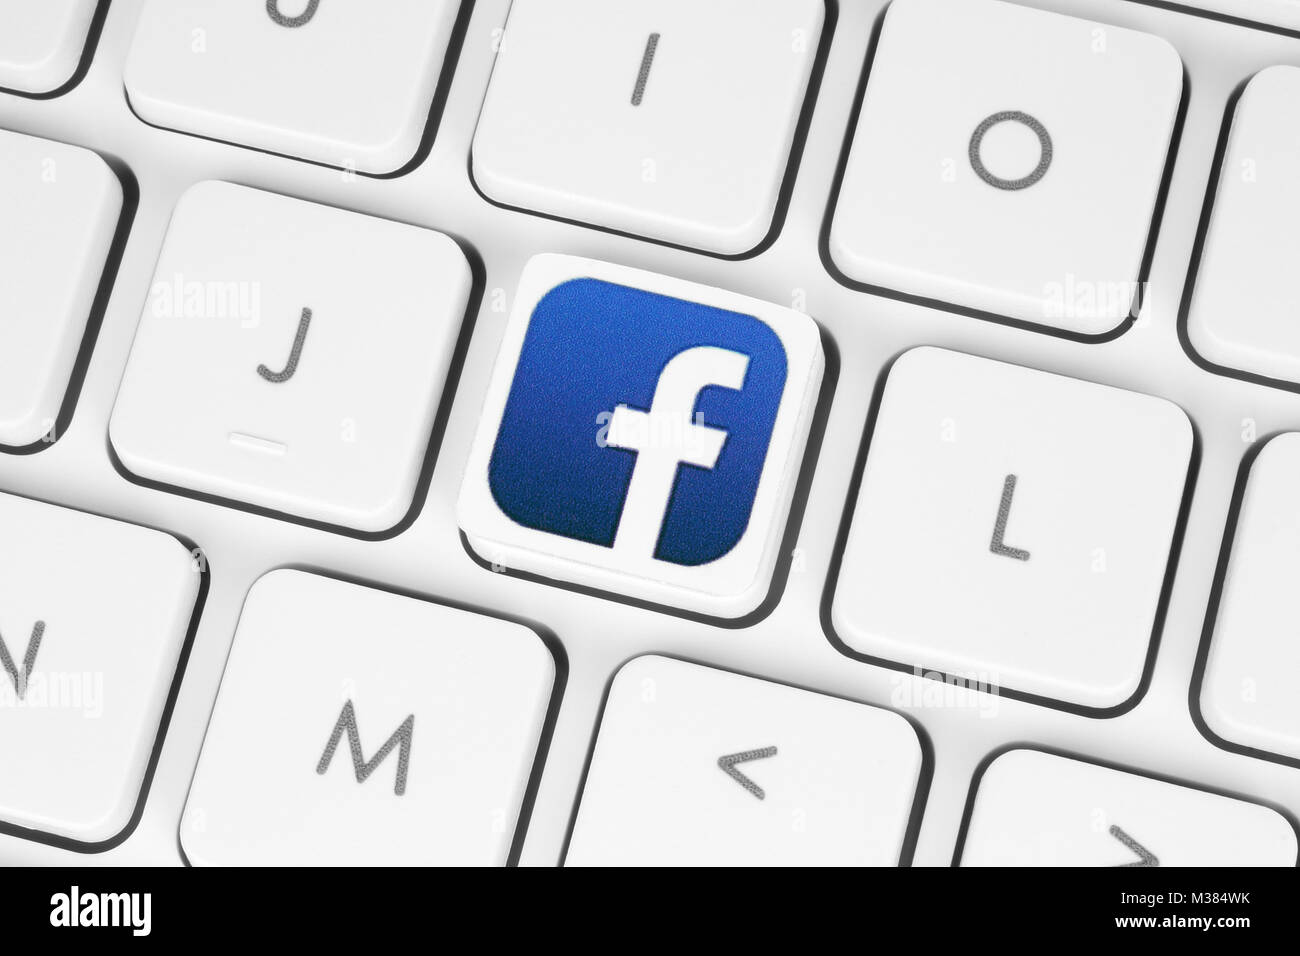 Kiew, Ukraine - 6. Mai 2016: Facebook-Logo gedruckt auf Papier und auf weißen Computertastatur. Facebook ist ein bekannter social-Networking-Dienst Stockfoto